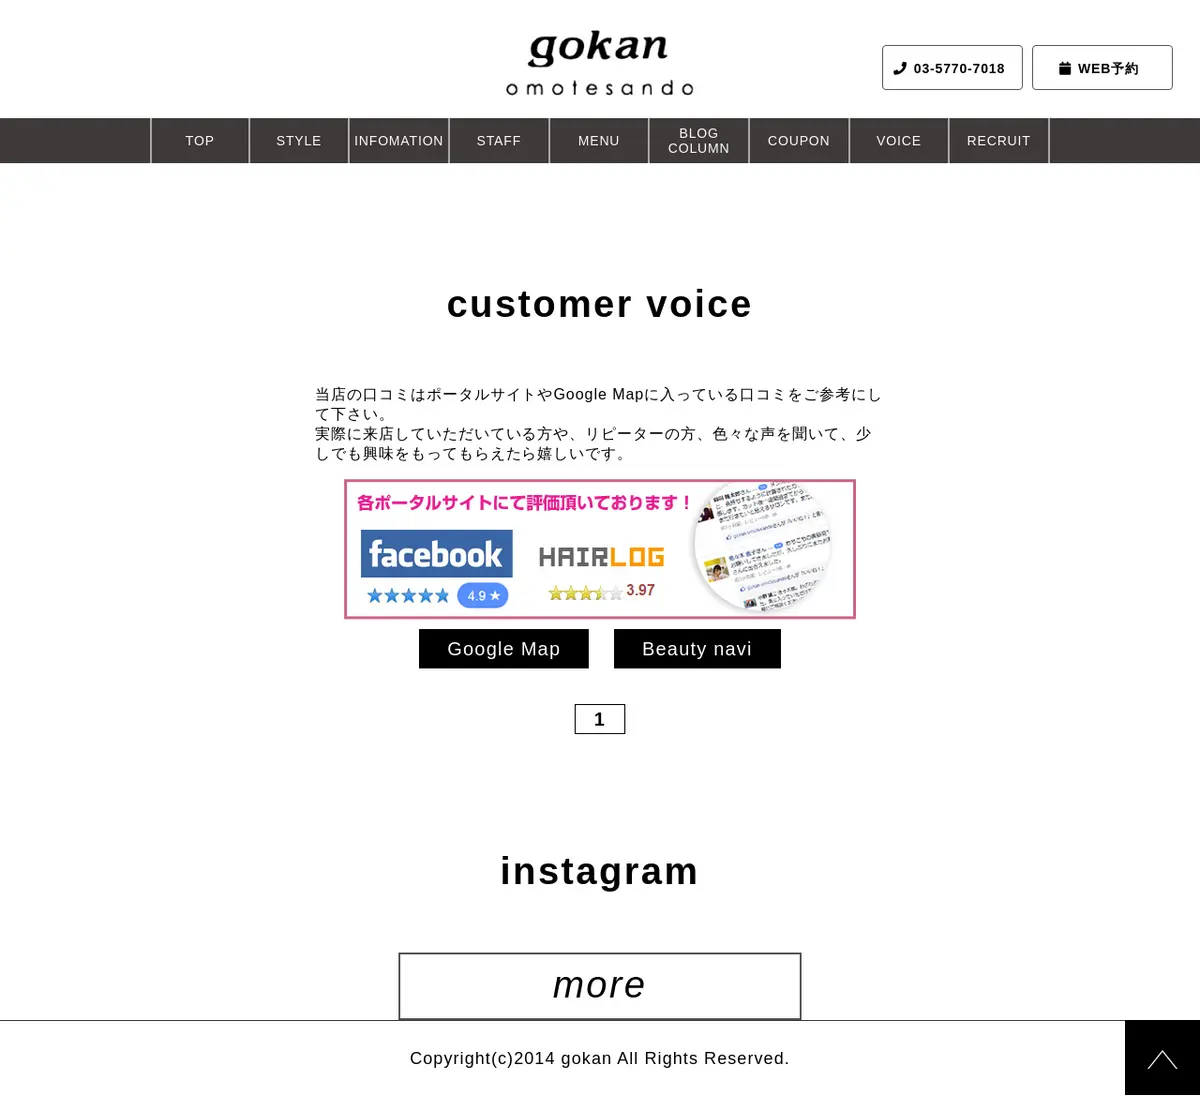 キャプチャ画面 会社名:gokan omotesandoプロジェクト名:gokan omotesando 画面名:クチコミ・レビュー一覧 デバイス名:PCカテゴリ:美容・化粧・エステタグ:PC,クチコミ・レビュー一覧